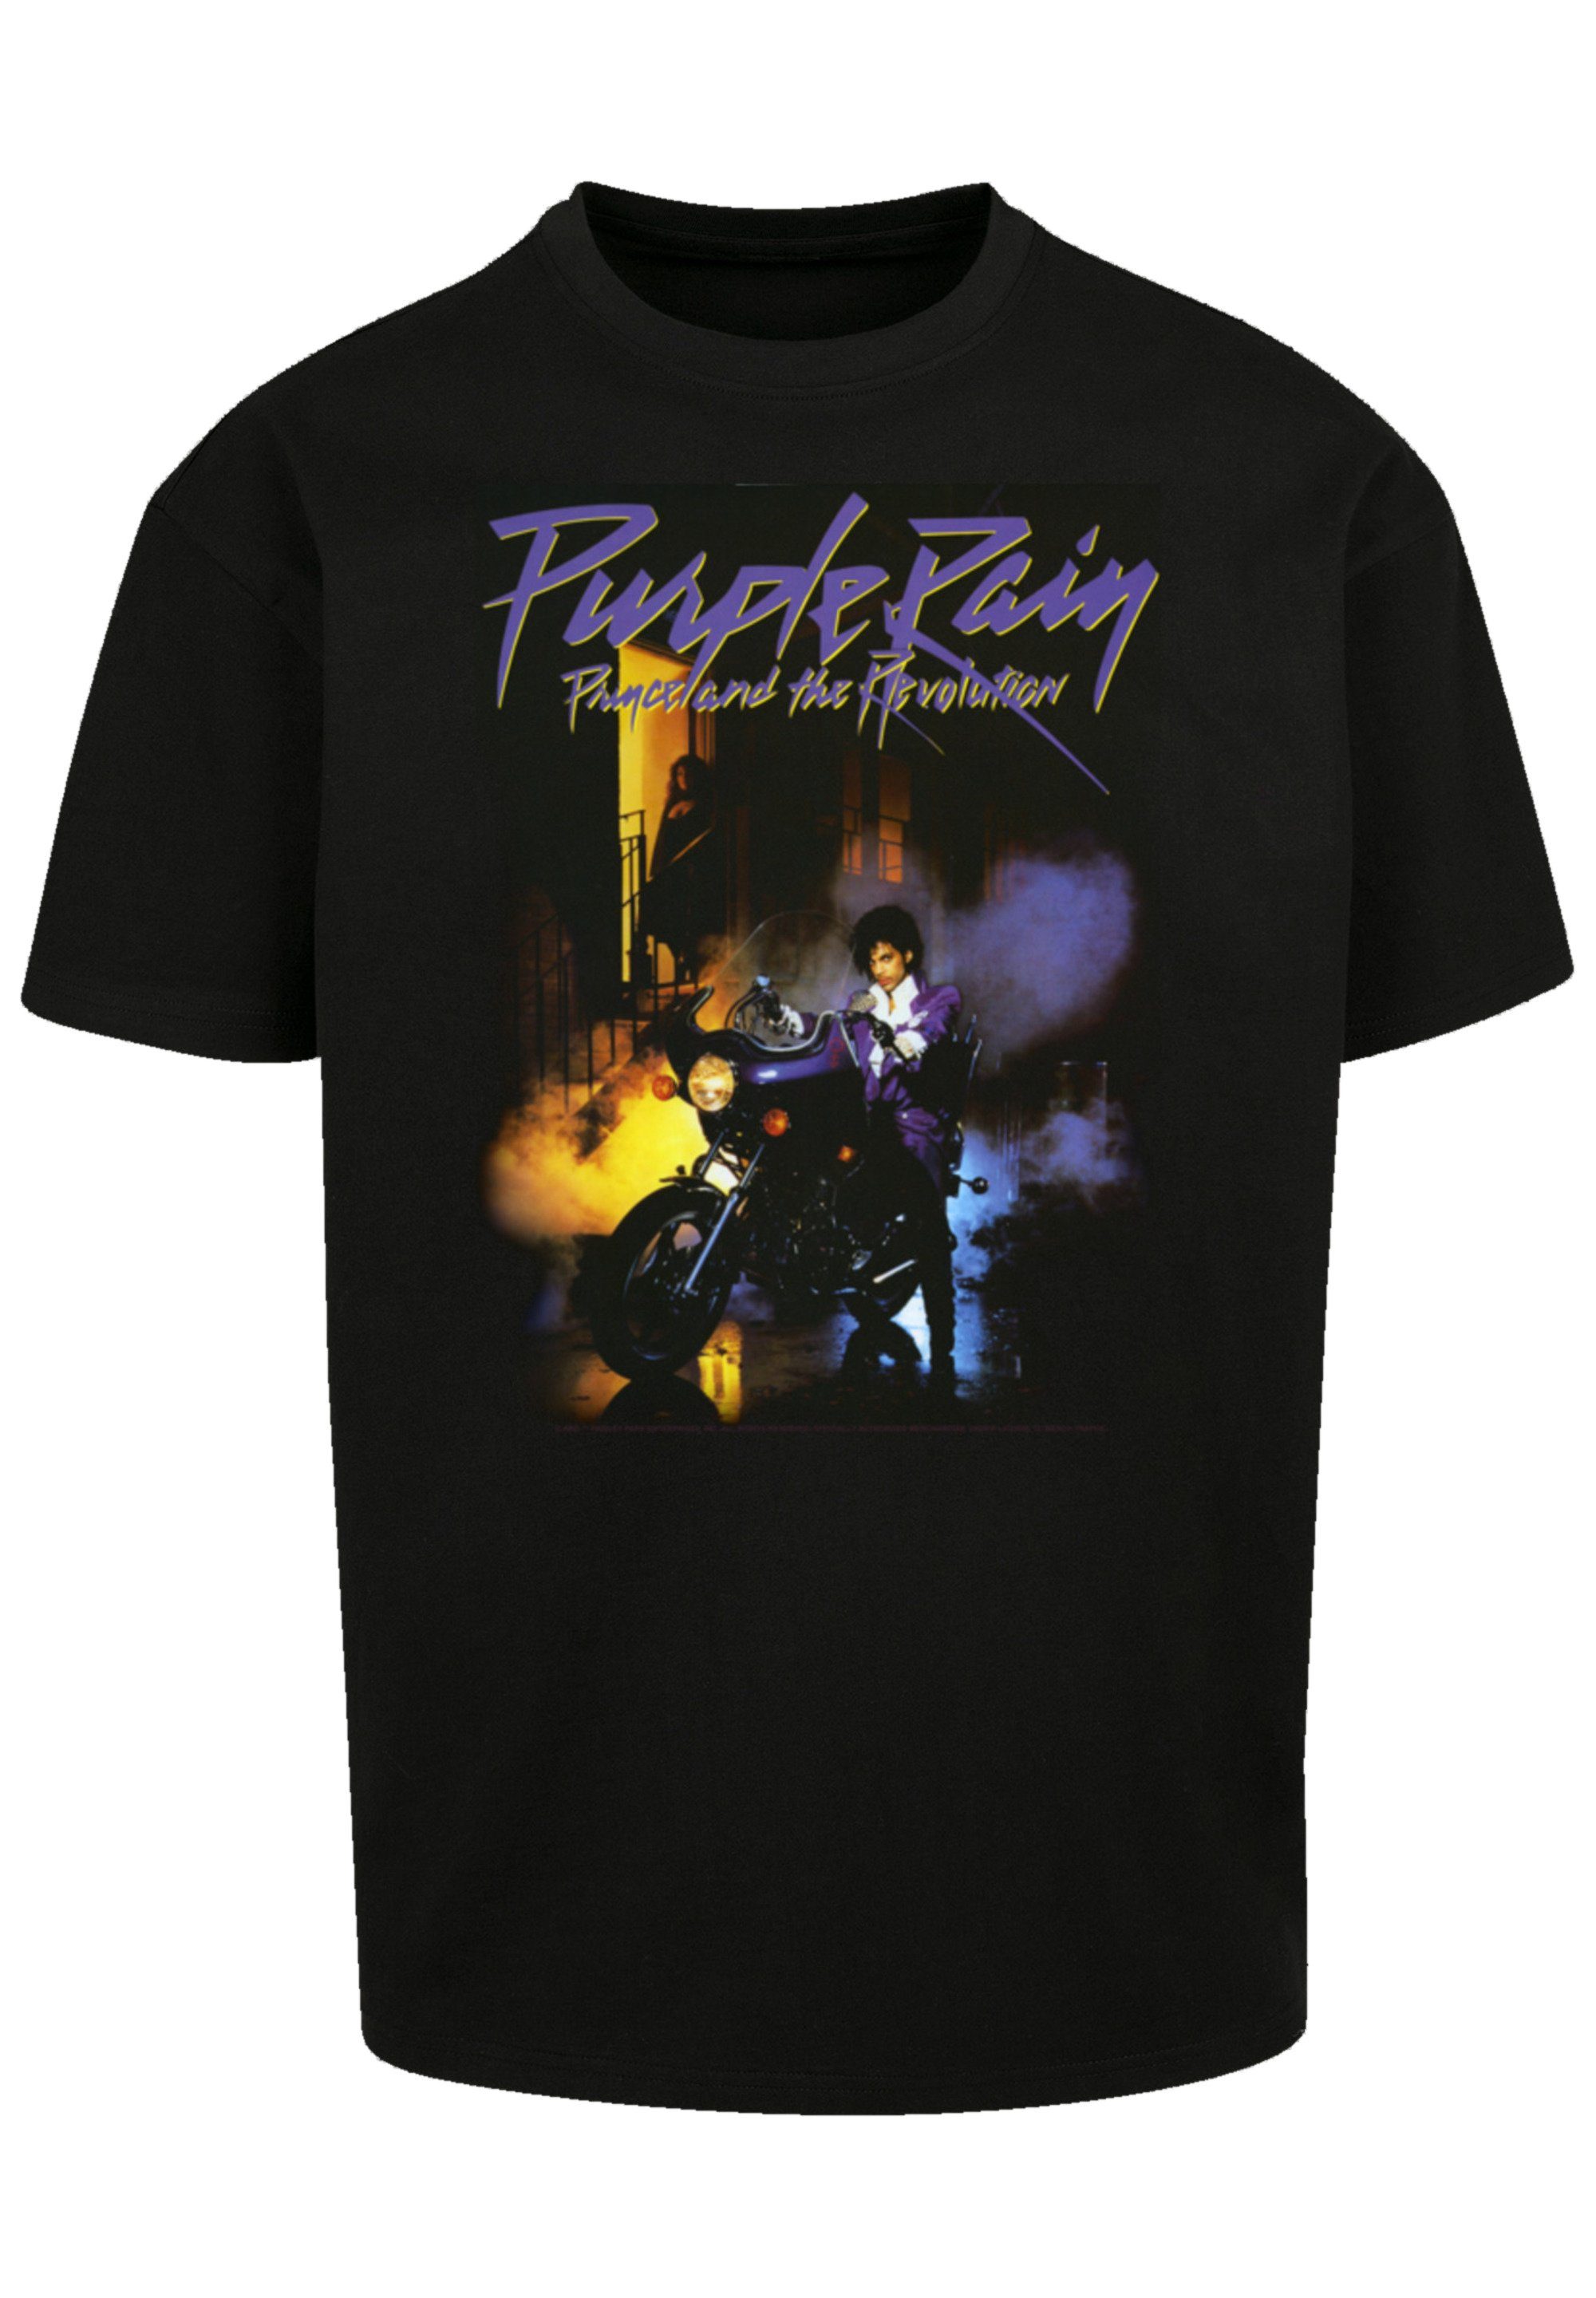 T-Shirt Prince Purple F4NT4STIC überschnittene Band, Schultern und Passform Musik Rock-Musik, Rain Weite Premium Qualität,